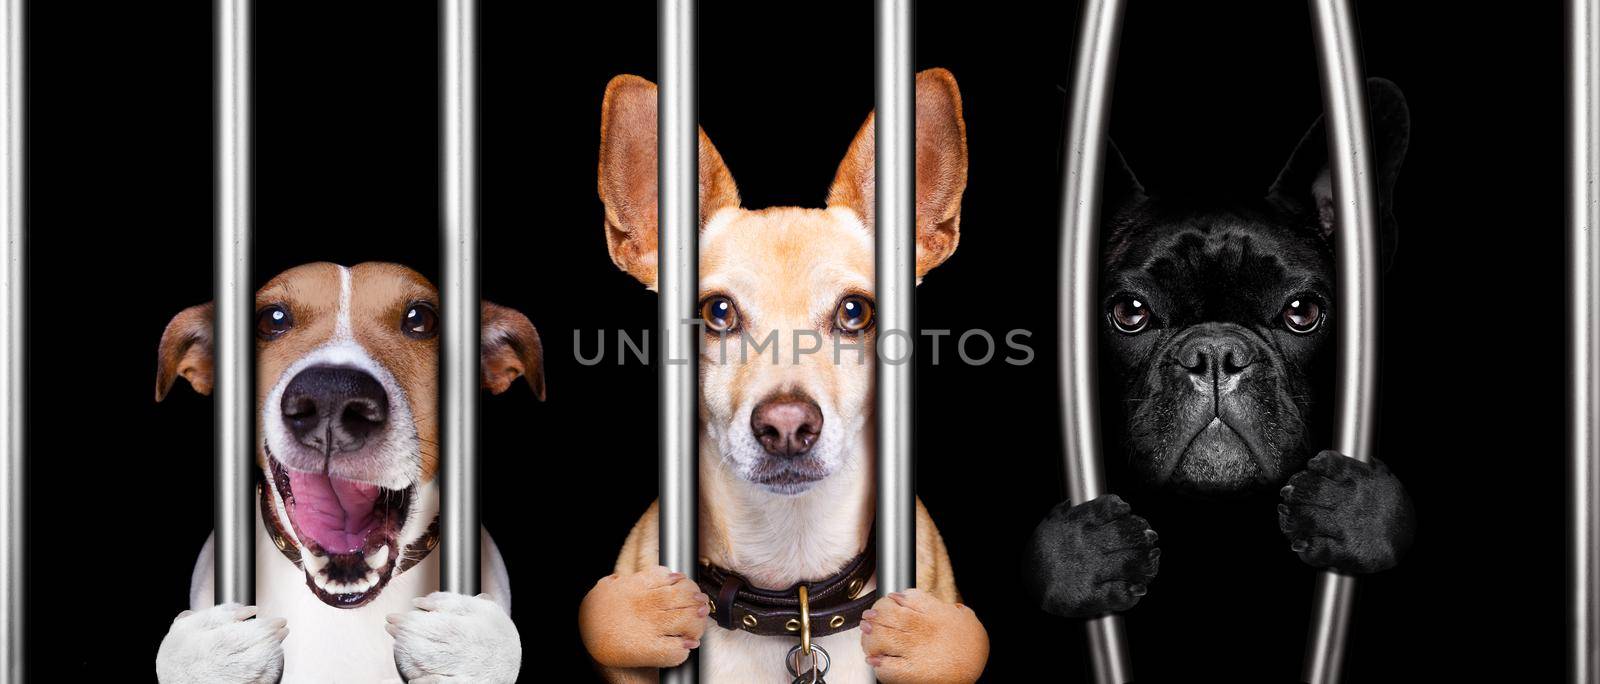 couple of  criminal dogs behind bars in police station, jail prison, or shelter  for bad behavior